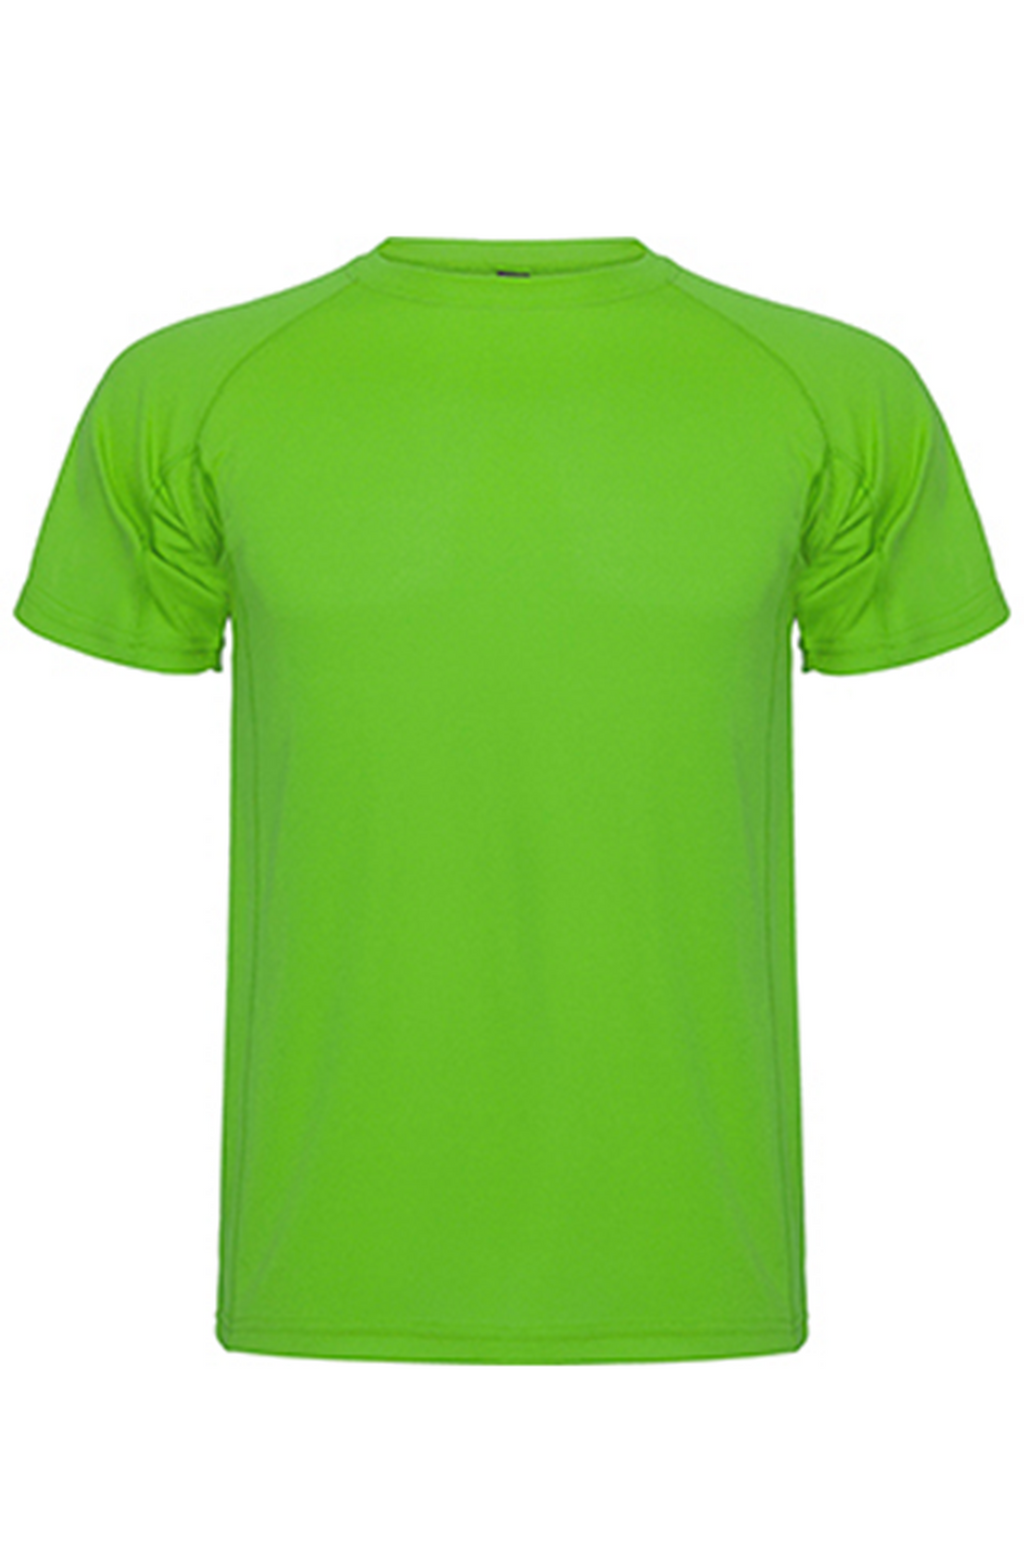 Trenings T-shirt - Grønn